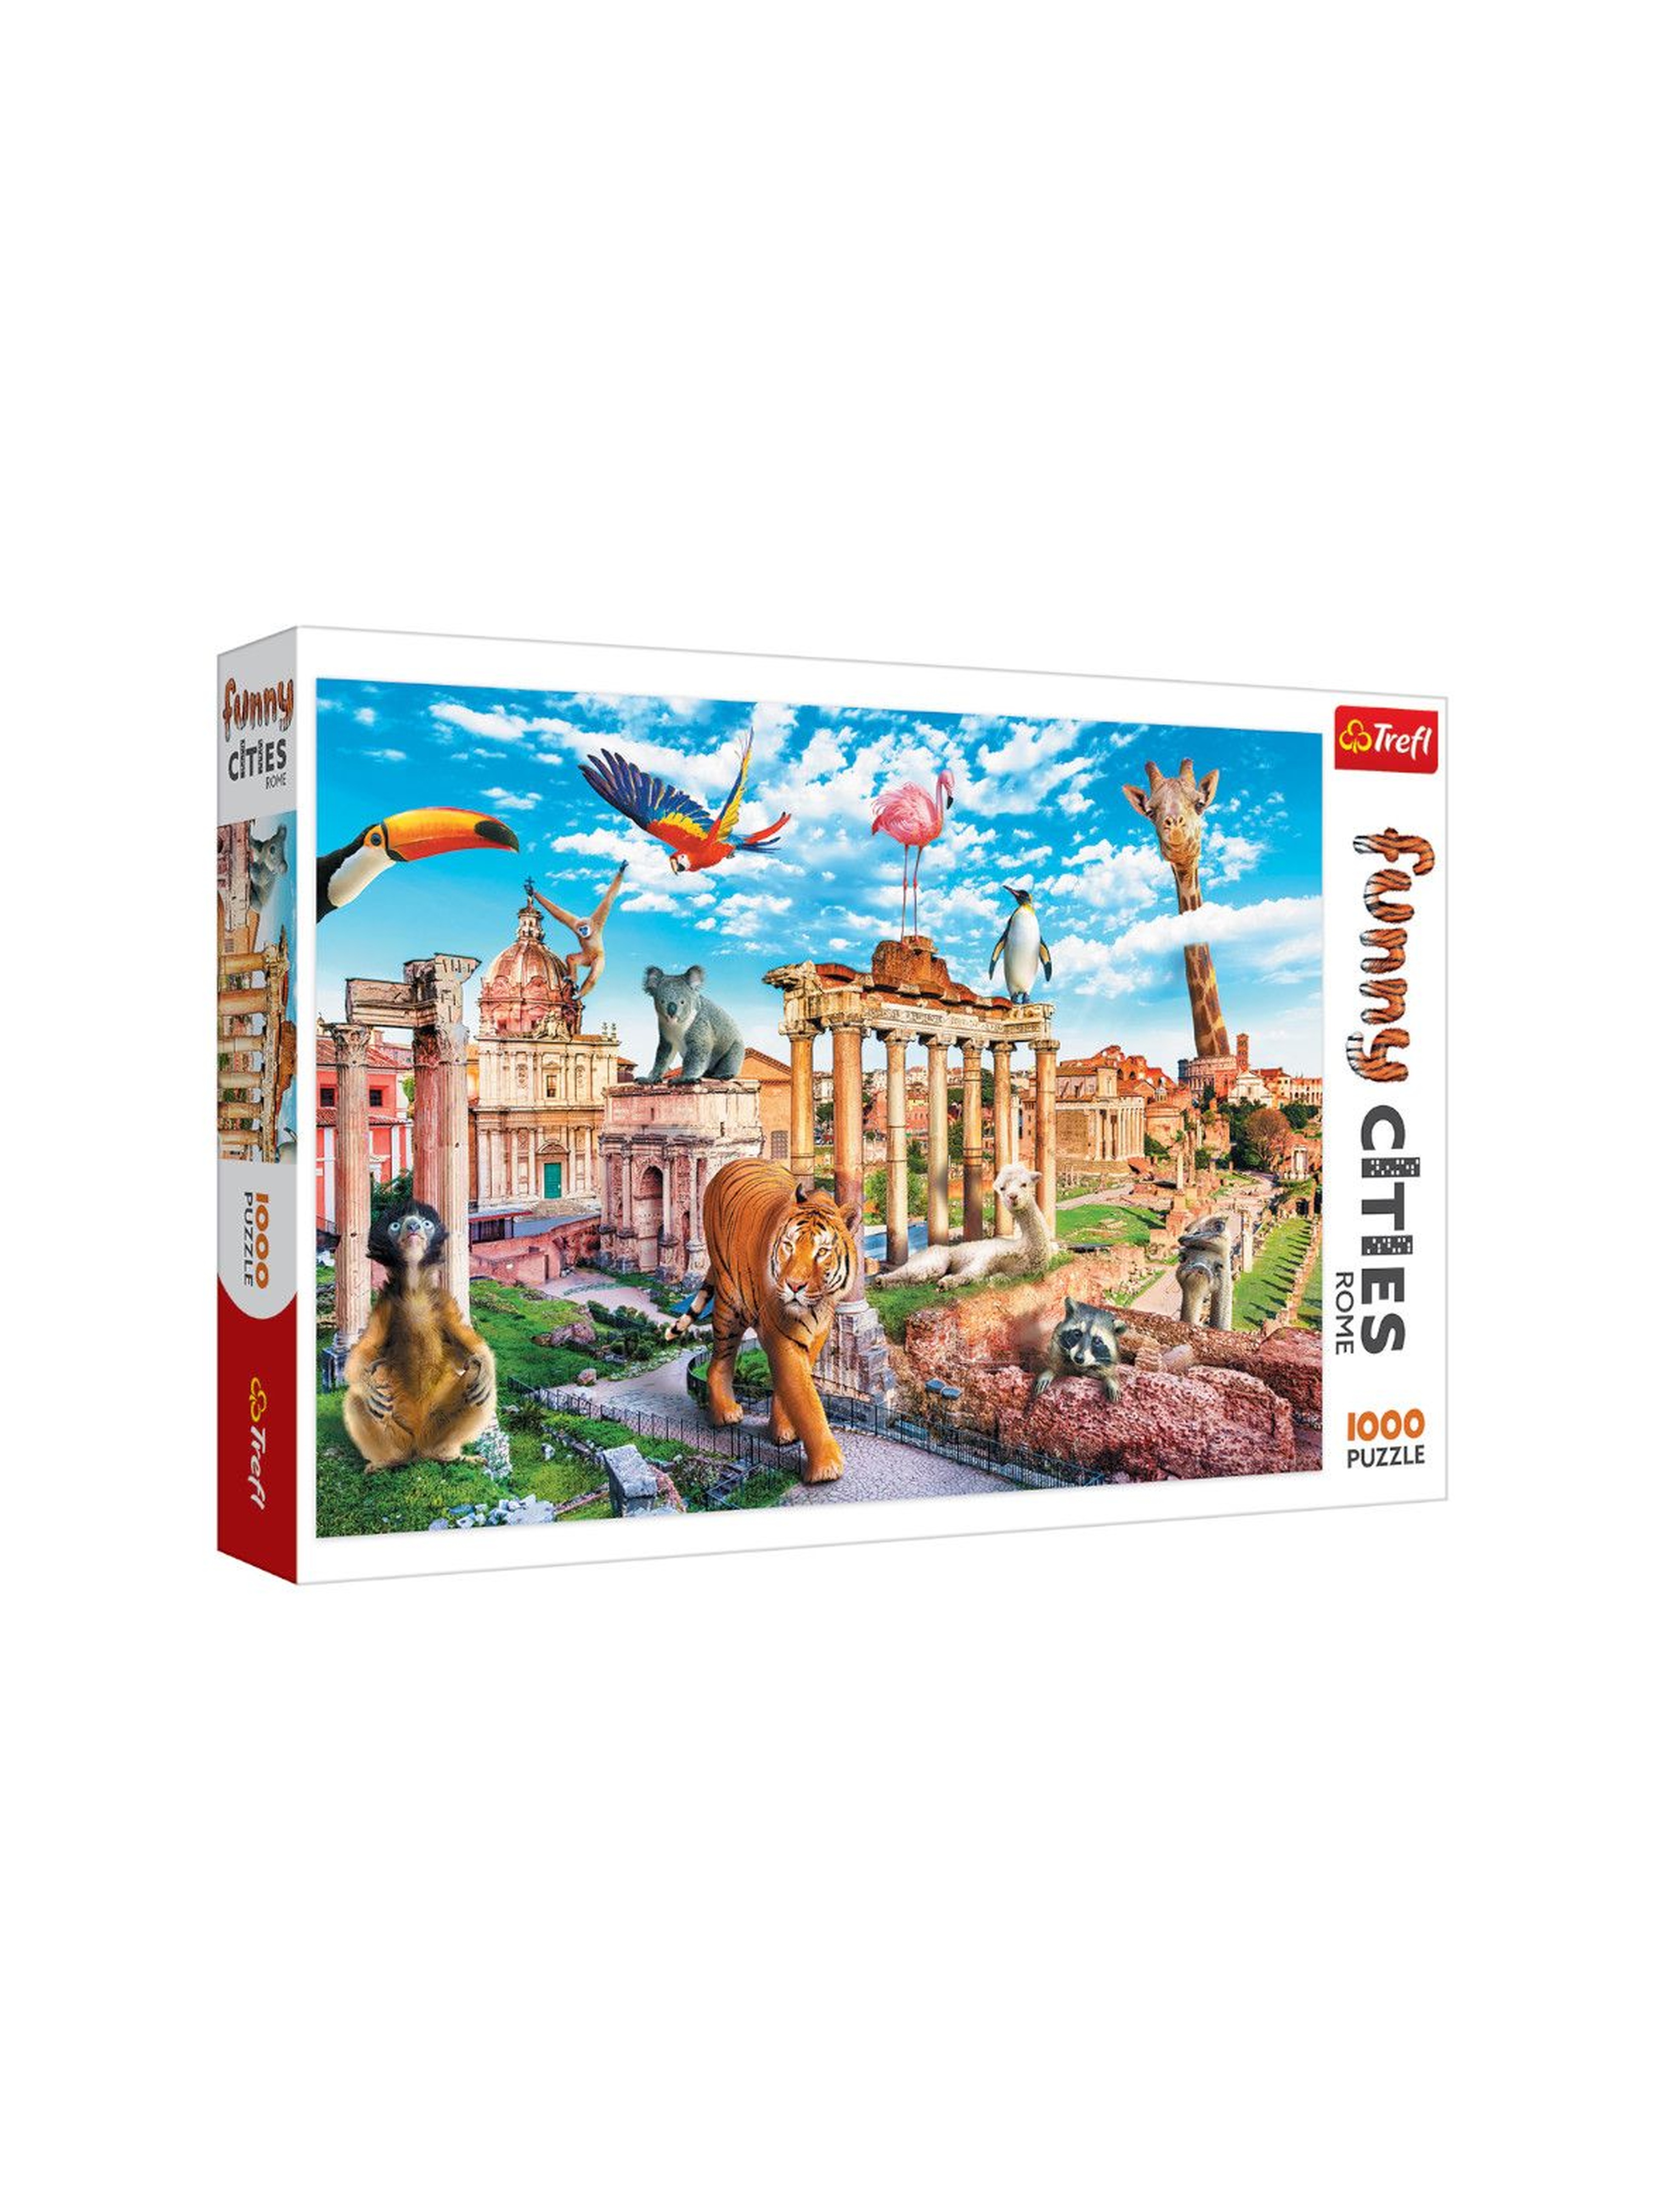 Puzzle 1000 Funny Cities - Dziki Rzym